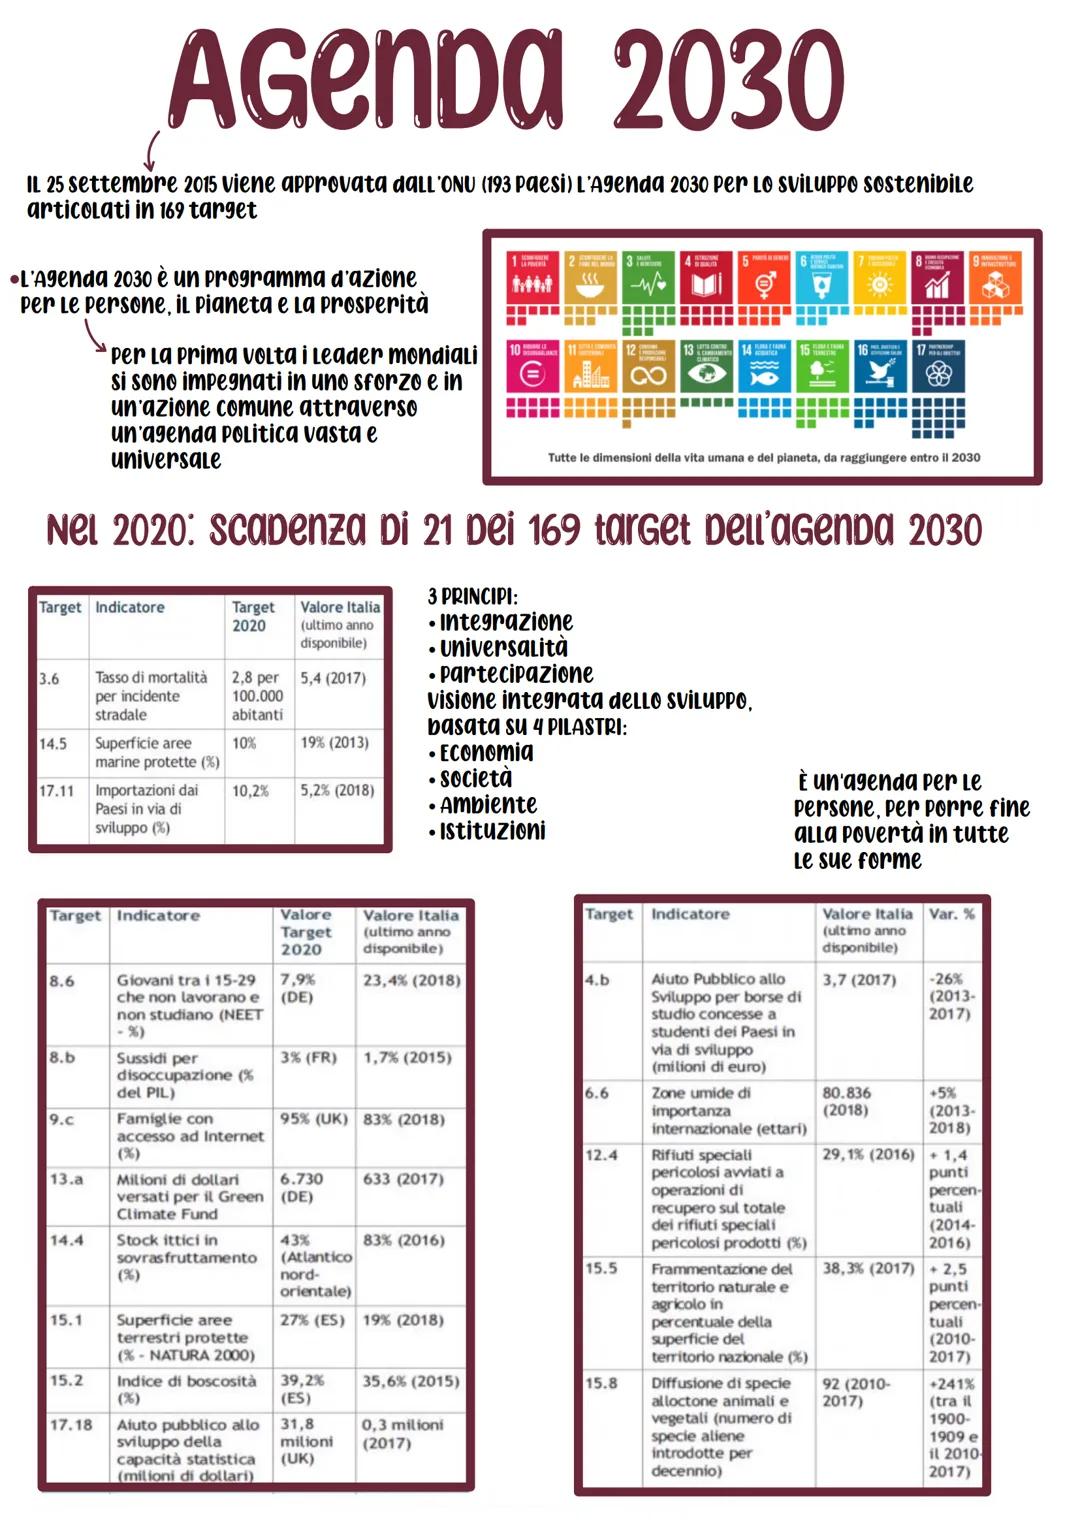 
<p>Il 25 settembre 2015 viene approvata dall'ONU (193 Paesi) l'Agenda 2030 per lo Sviluppo Sostenibile, articolata in 169 target. Si tratta